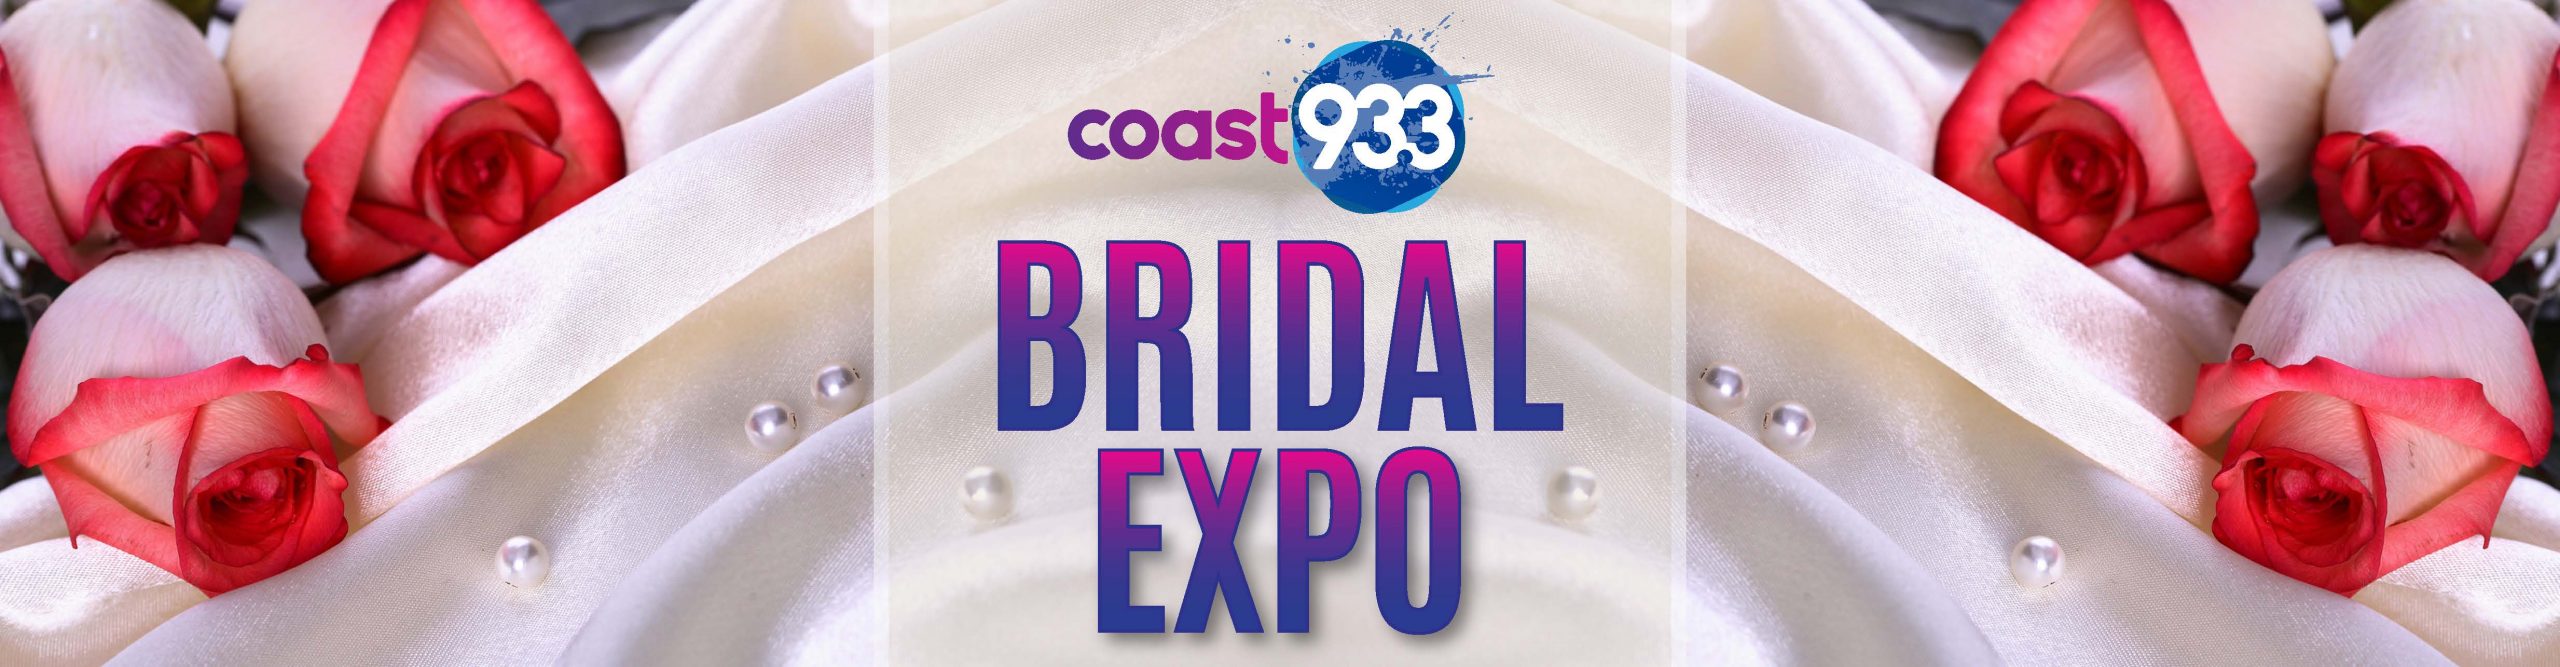 The Coast 93.3 Bridal Expo